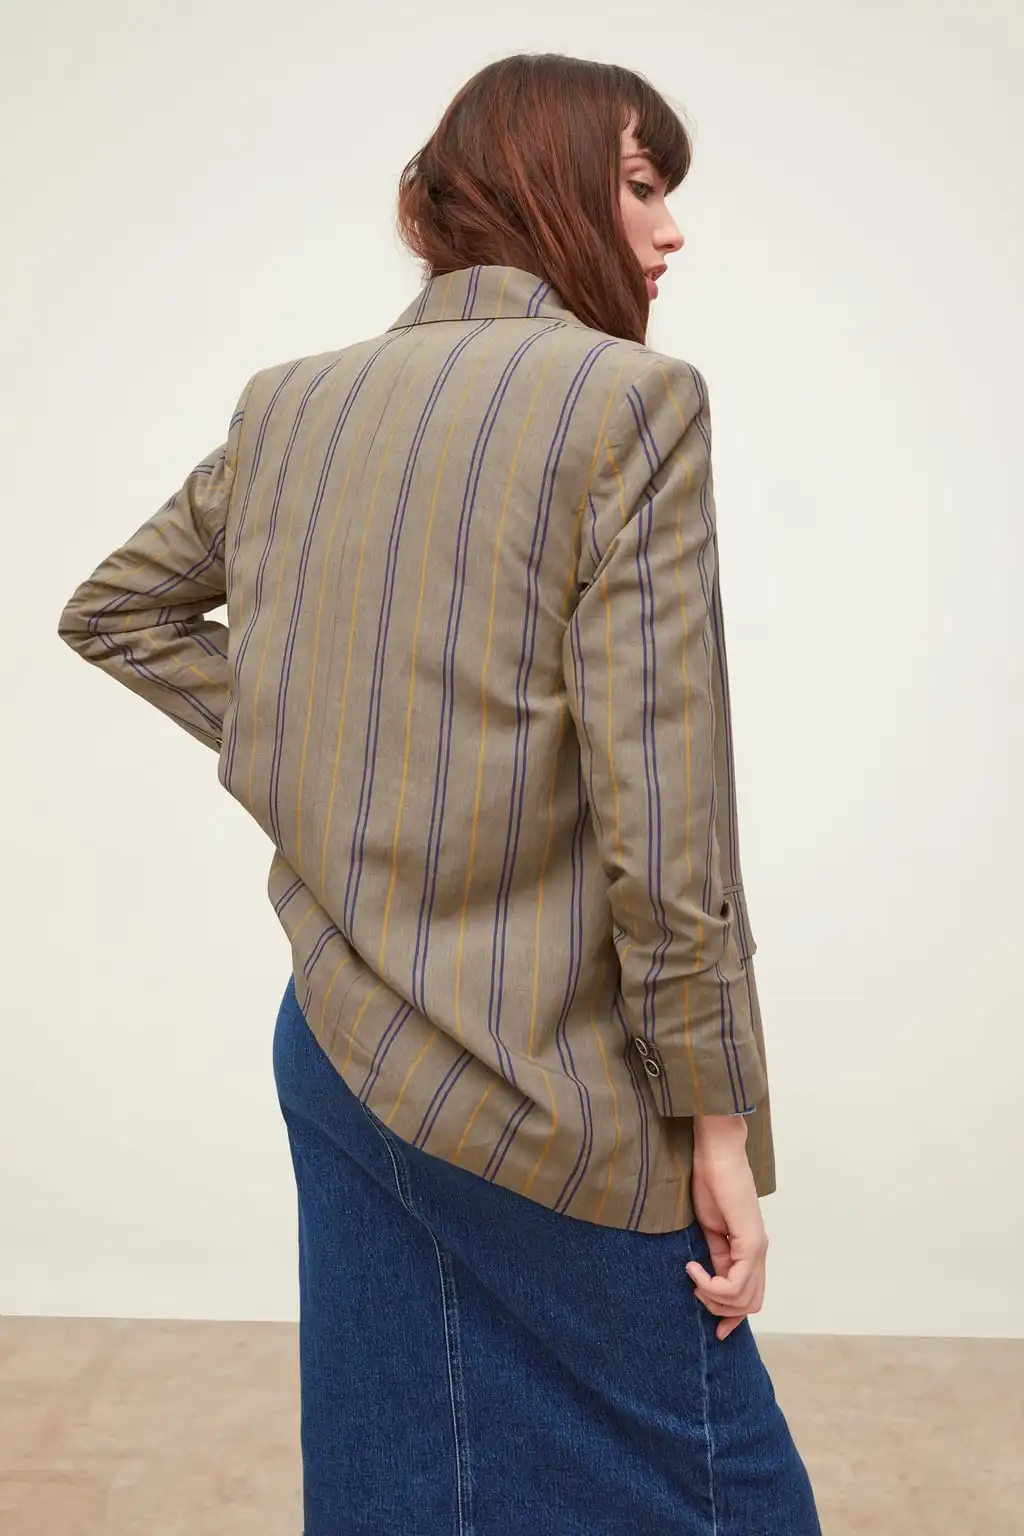 Классический однотонный двубортный женский пиджак блейзер с надрезом воротник Женский костюм пальто Модный повседневный осенний уличная одежда Топ